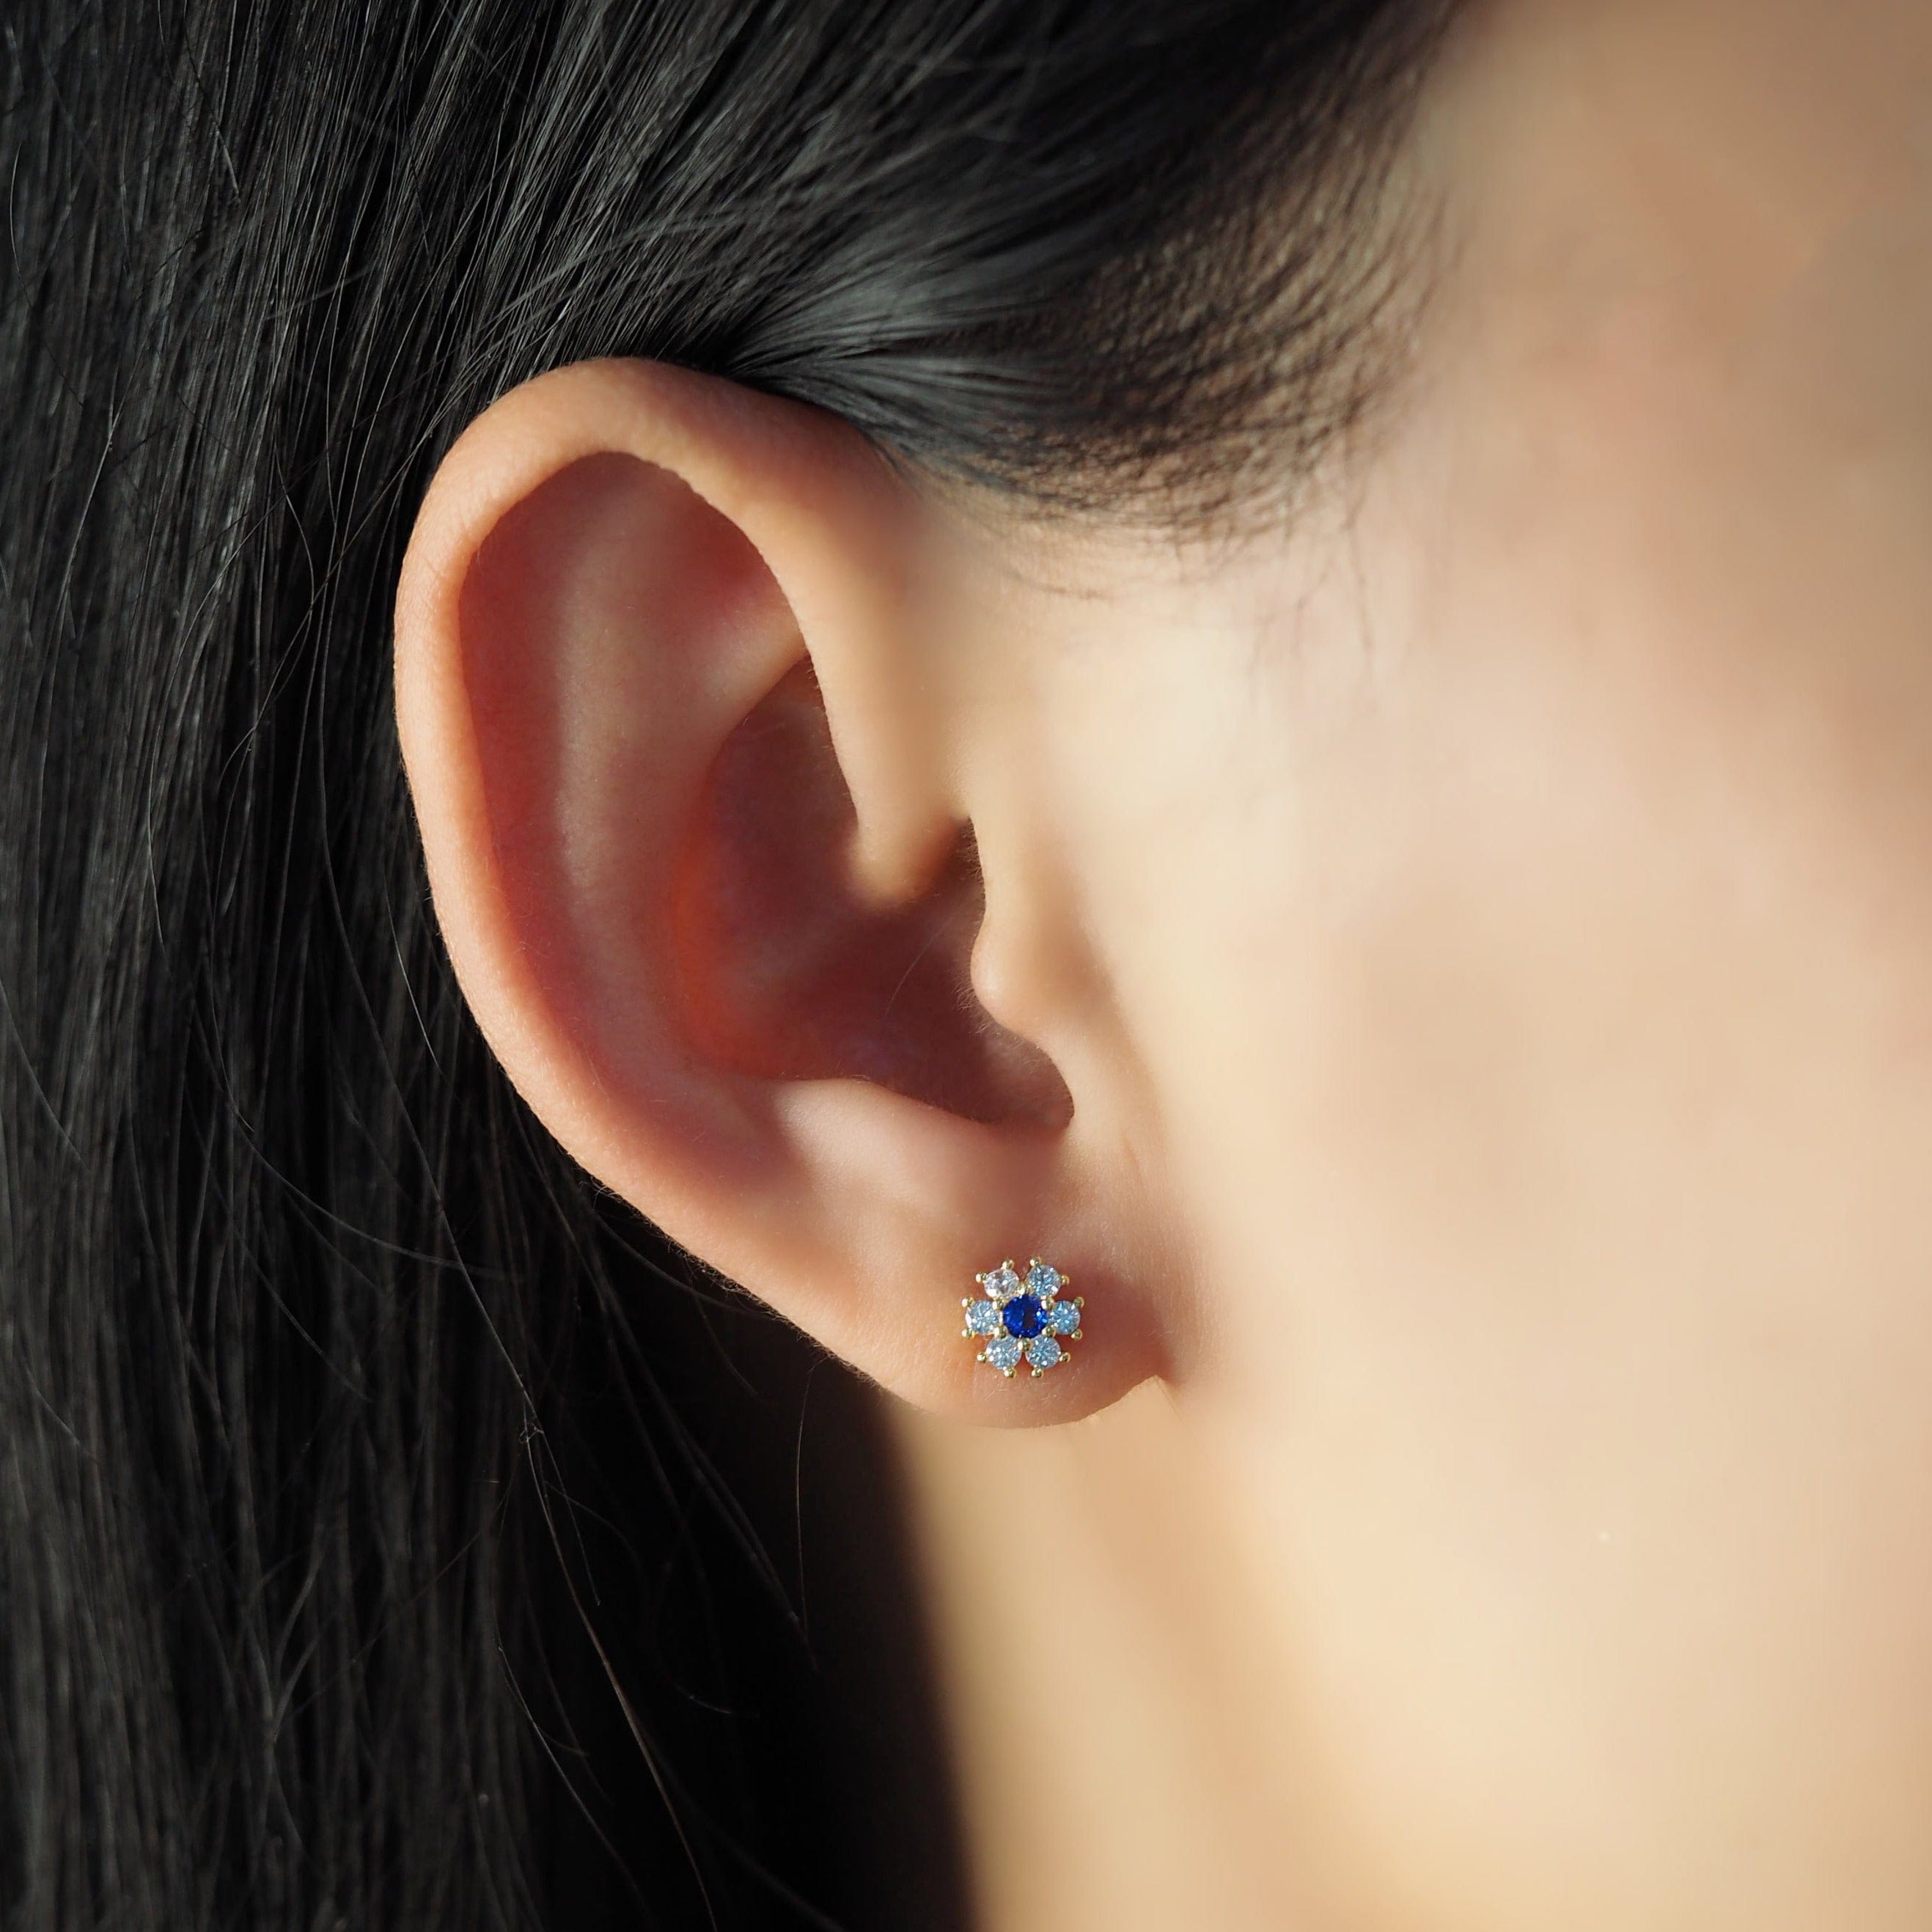 TAI JEWELRY Earrings CZ Flower Stud With Jewel Tone Center Stone